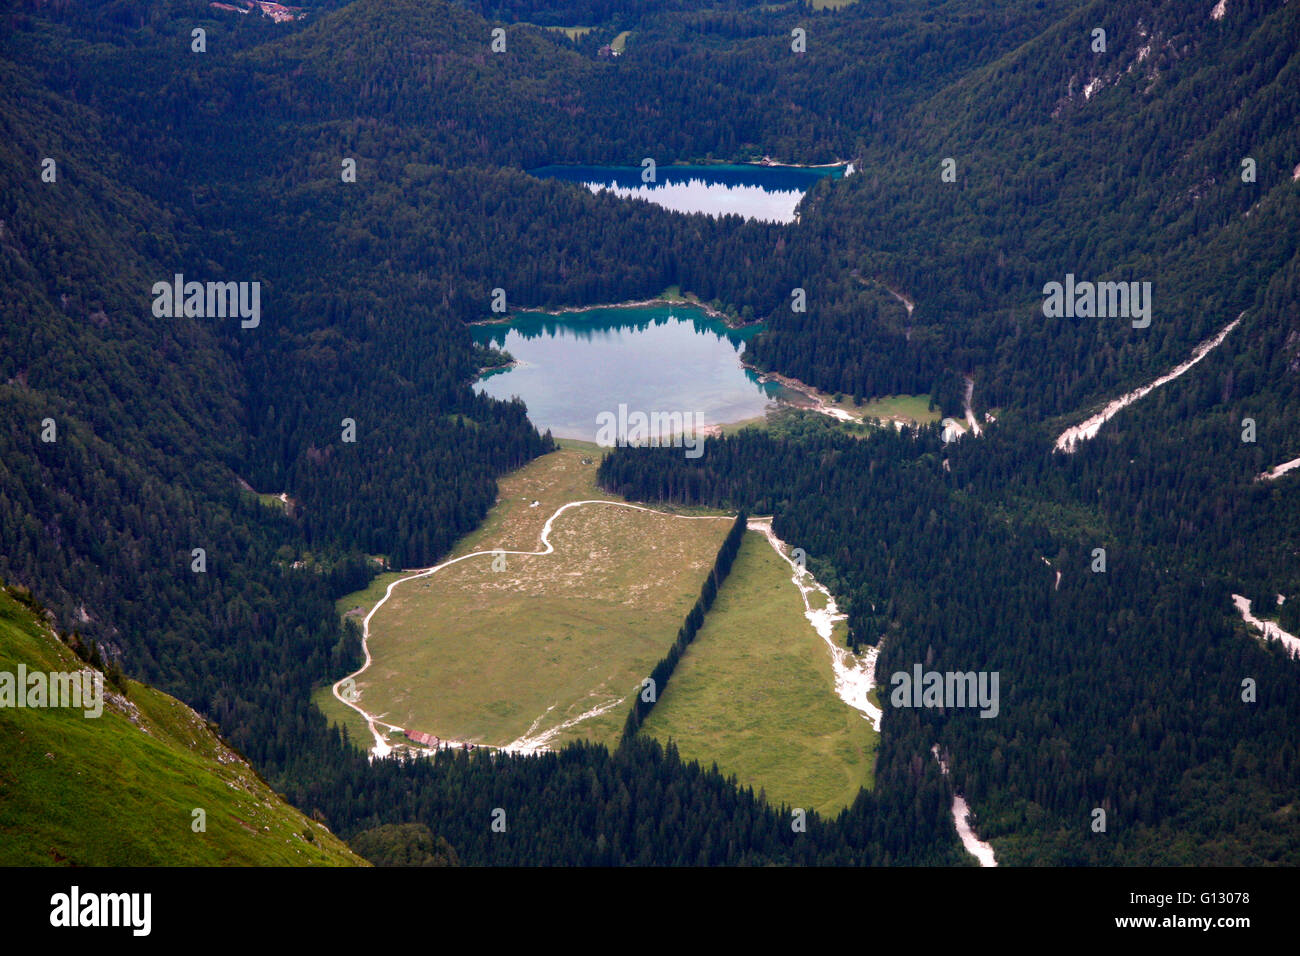 Lao di Fusine - vom Mangart aus gesehen - Impressionen: julische Alpen/ Julic Alps, Slowenien. Stock Photo